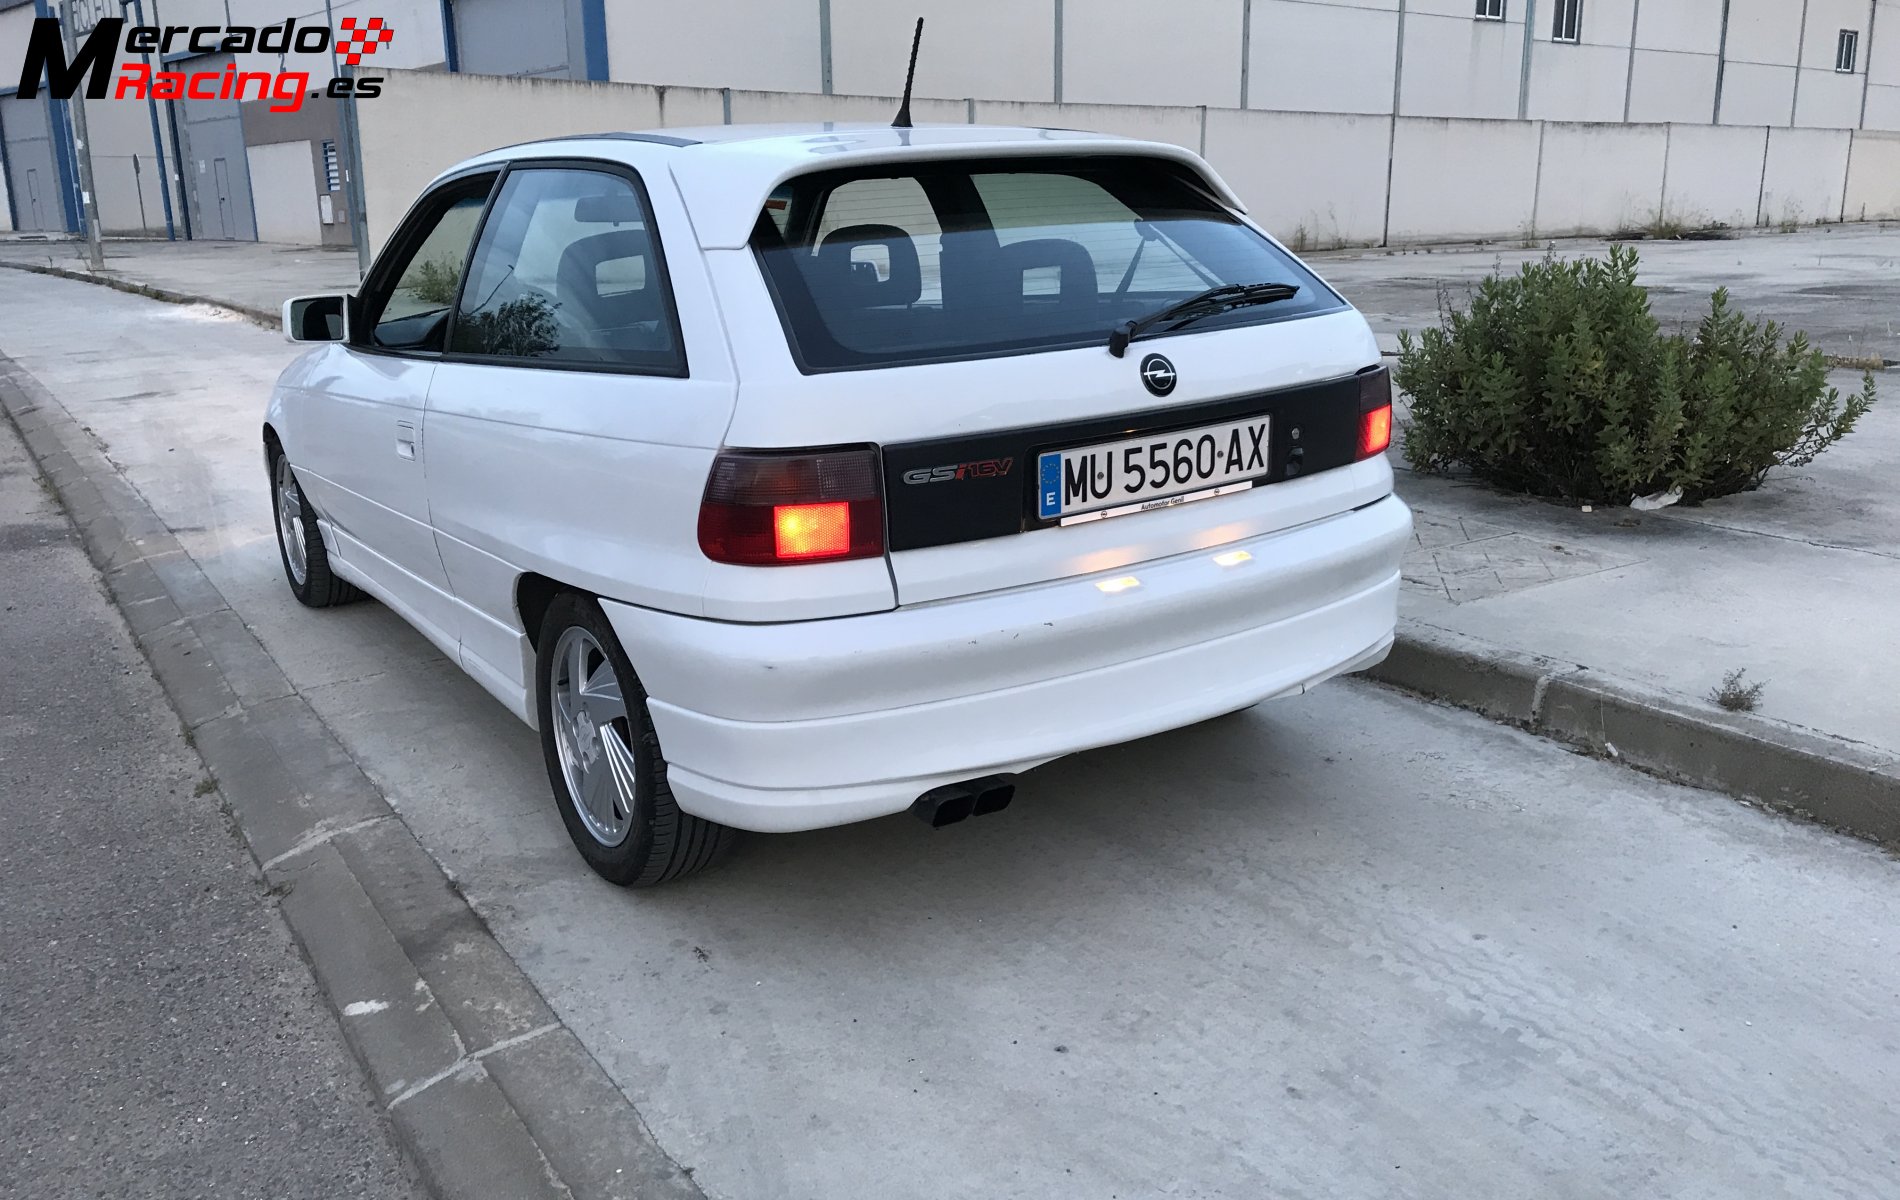 Opel astra gsi 16v